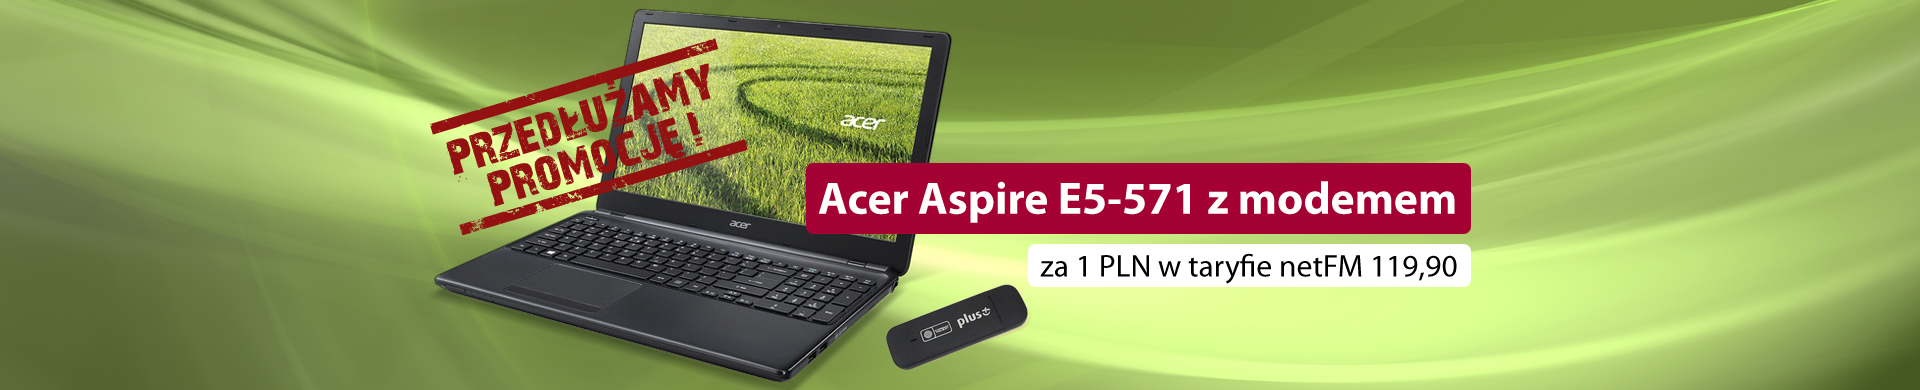 Acer Aspire E5-571 z modemem za 1 PLN w taryfie netFM 119,90!